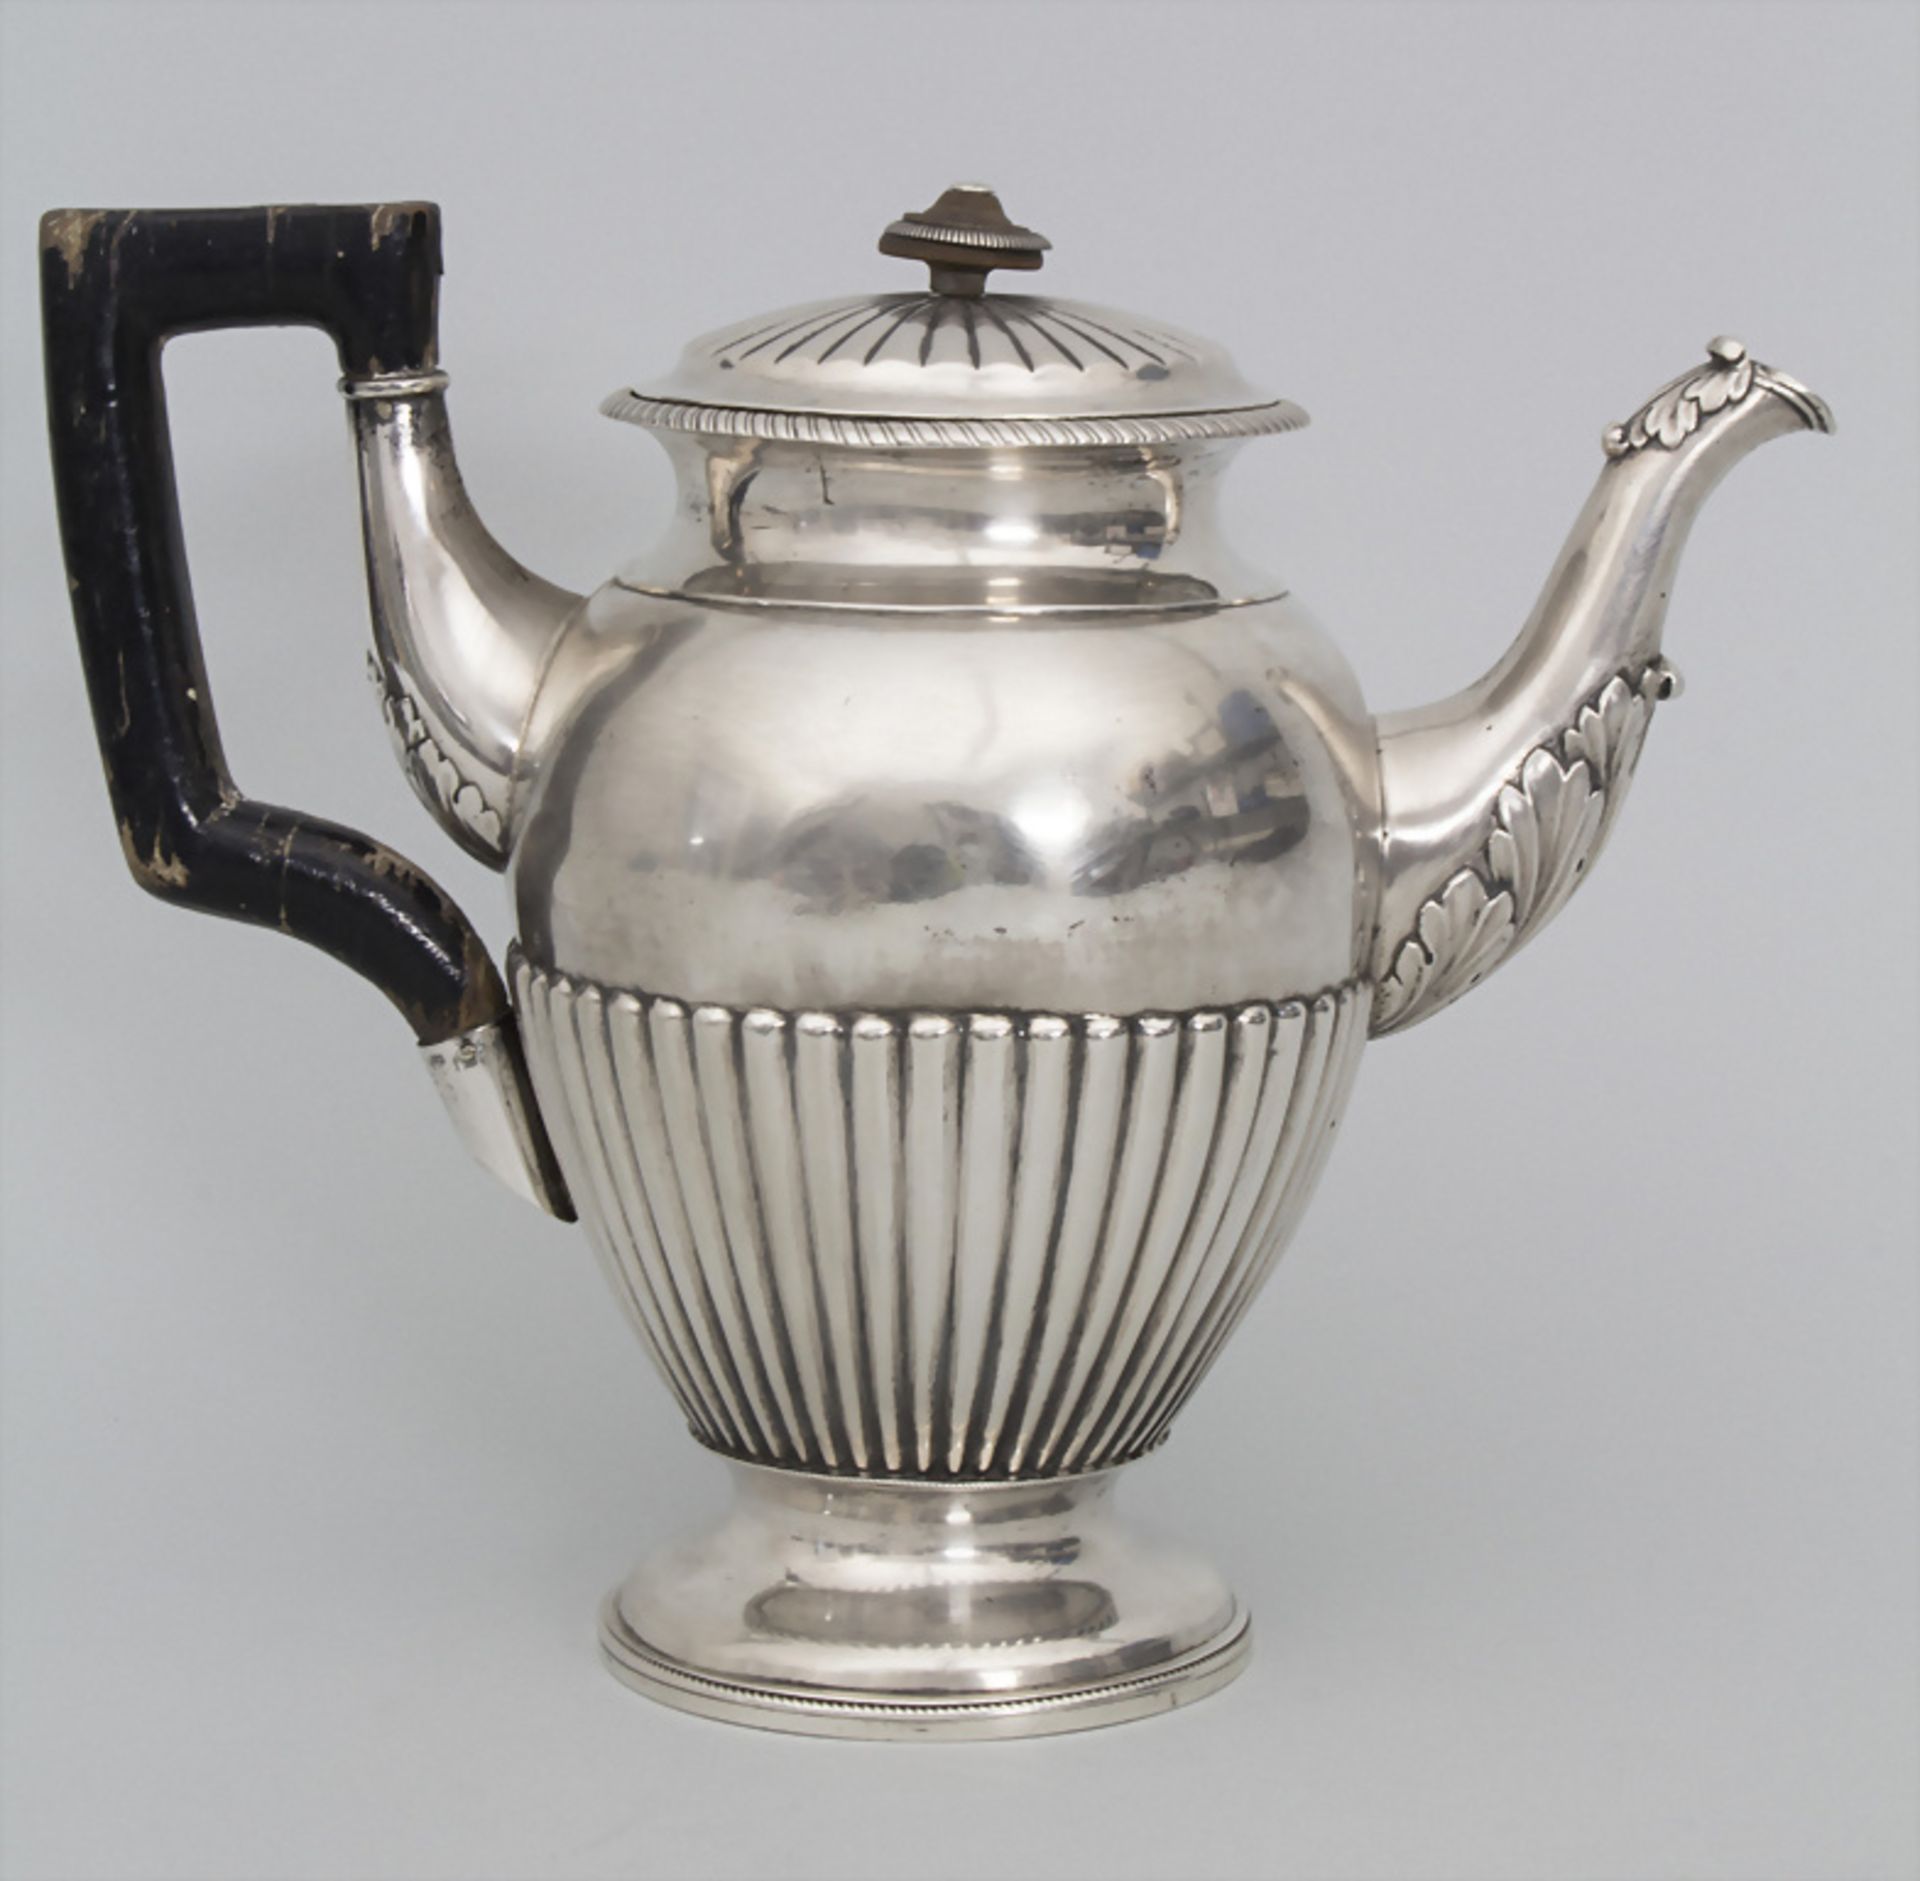 Große Teekanne / A large silver tea pot, Bene Ranninger, Wien, 1831 - Image 3 of 7